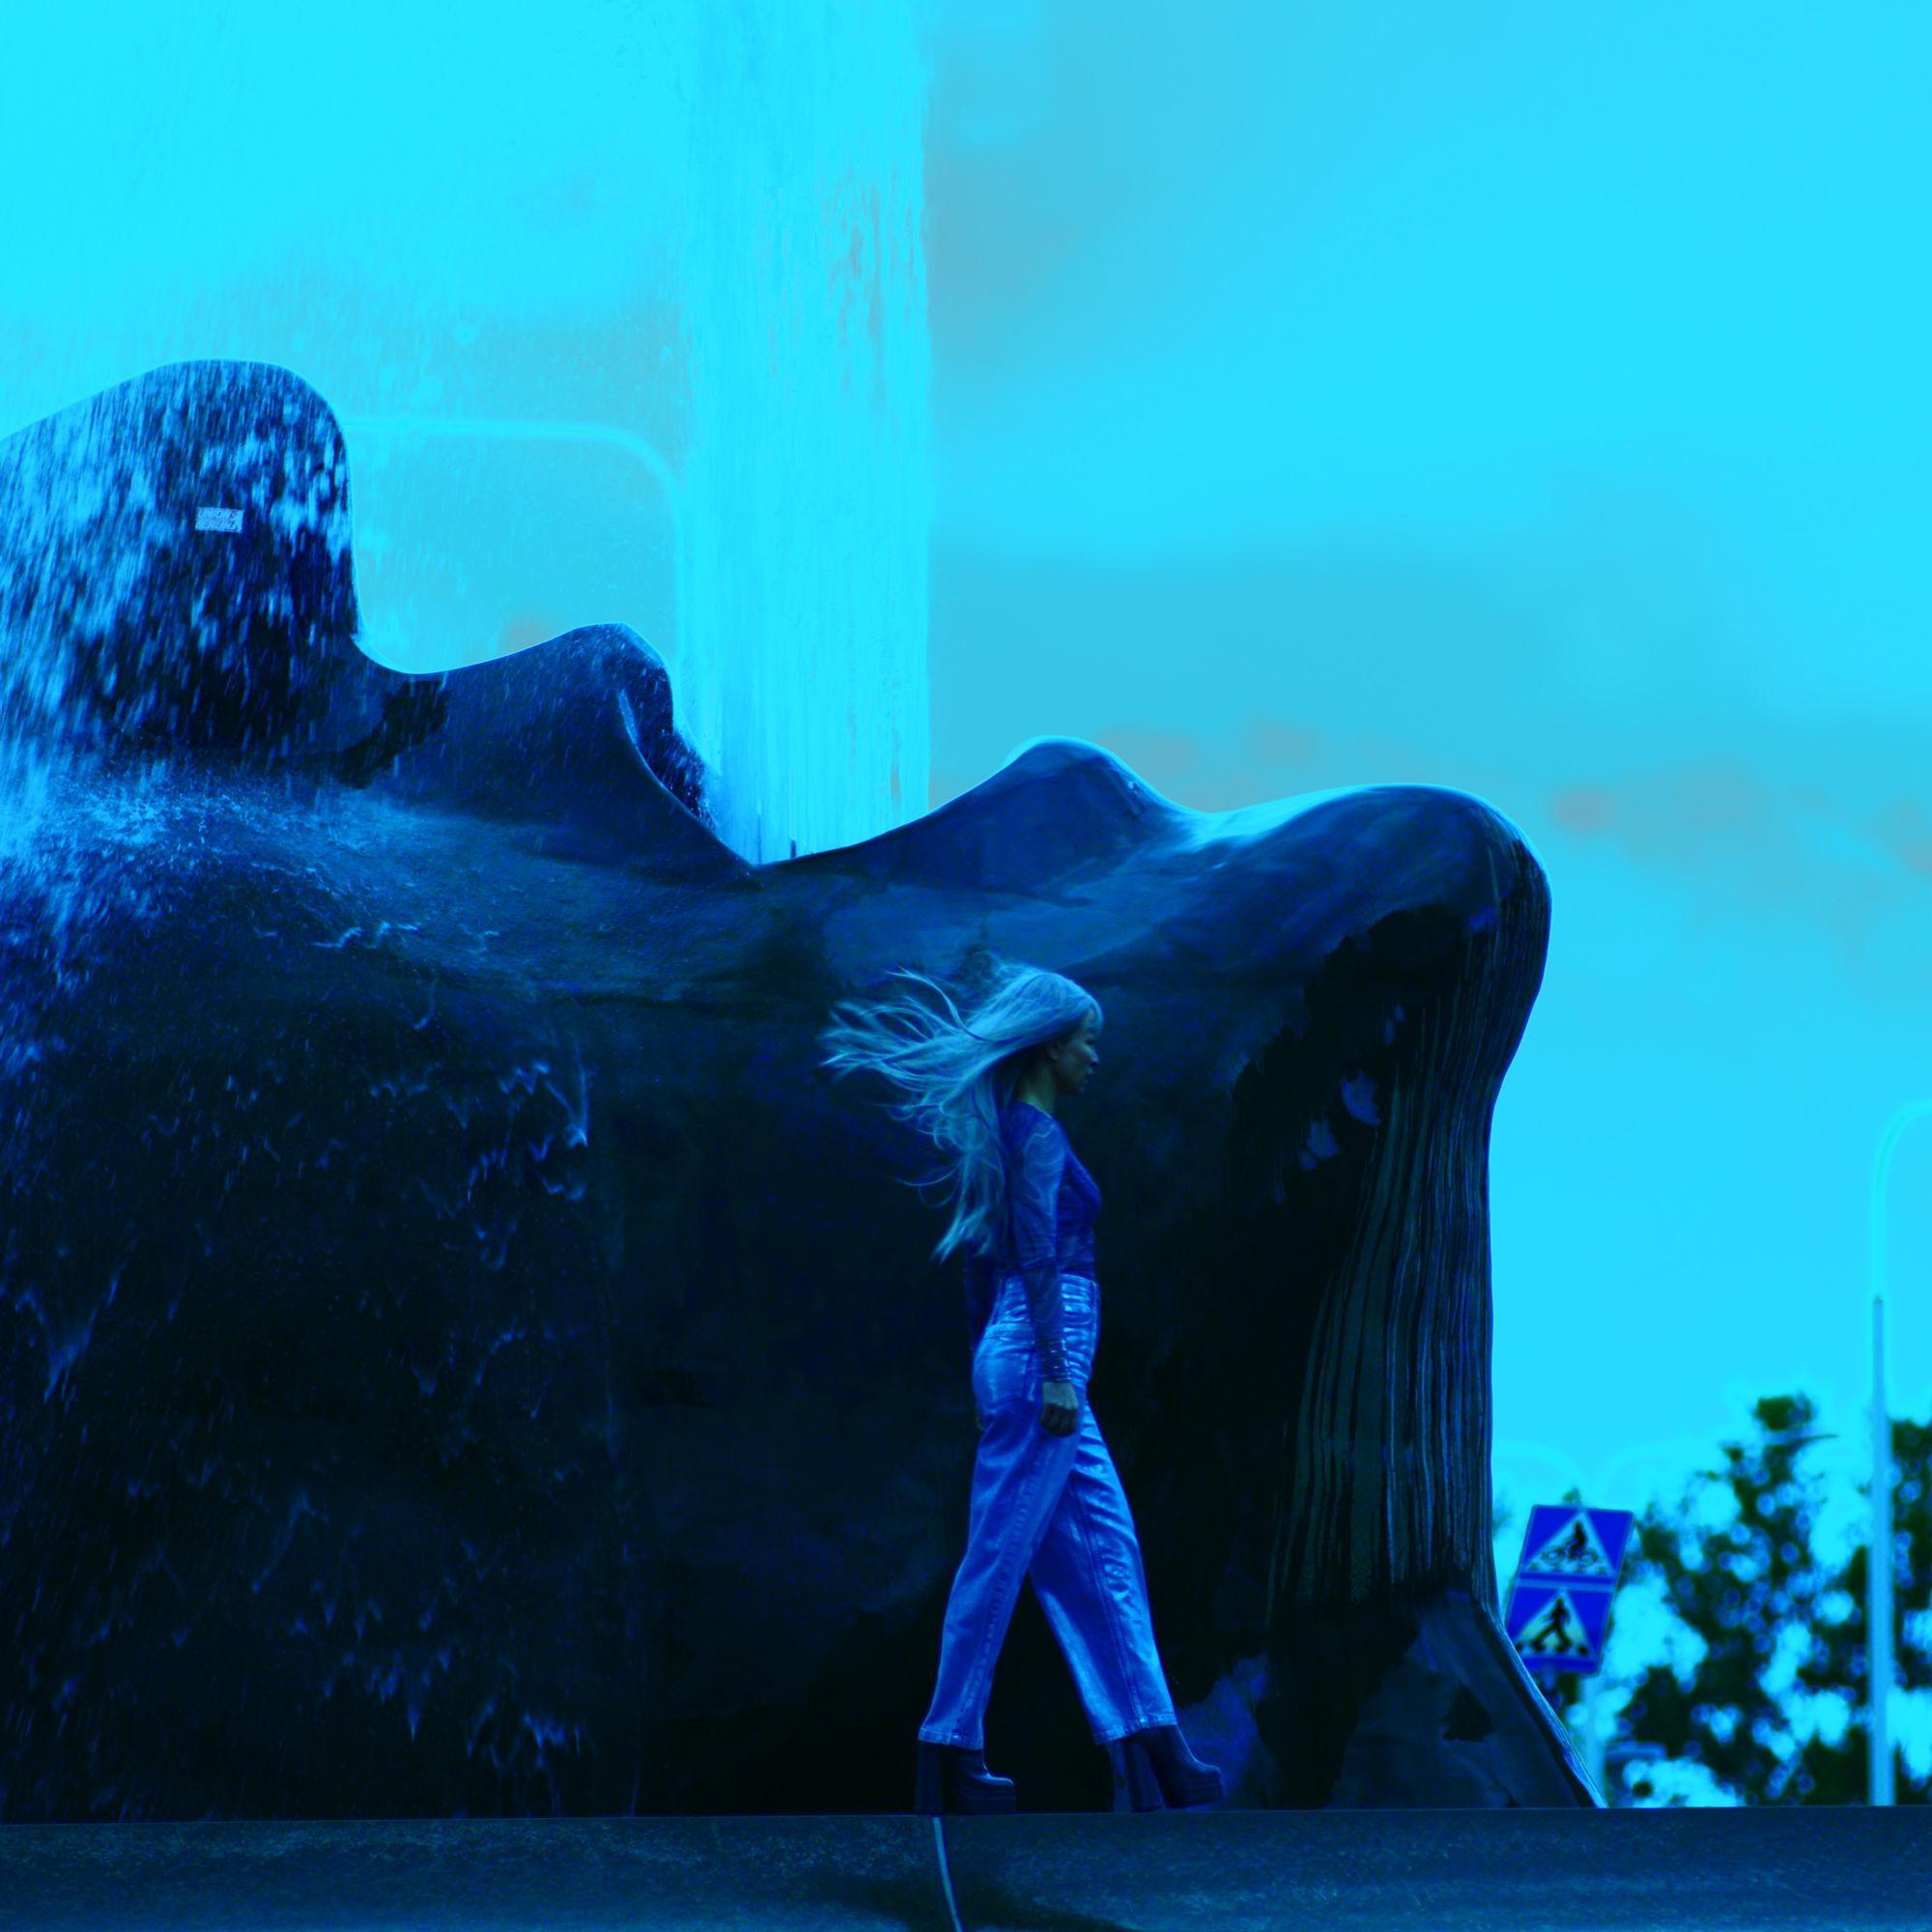 Bild från föreställningen Drömspel, föreställandes en kvinna med långt hår som går framför ett berg där ett vattenfall rinner.